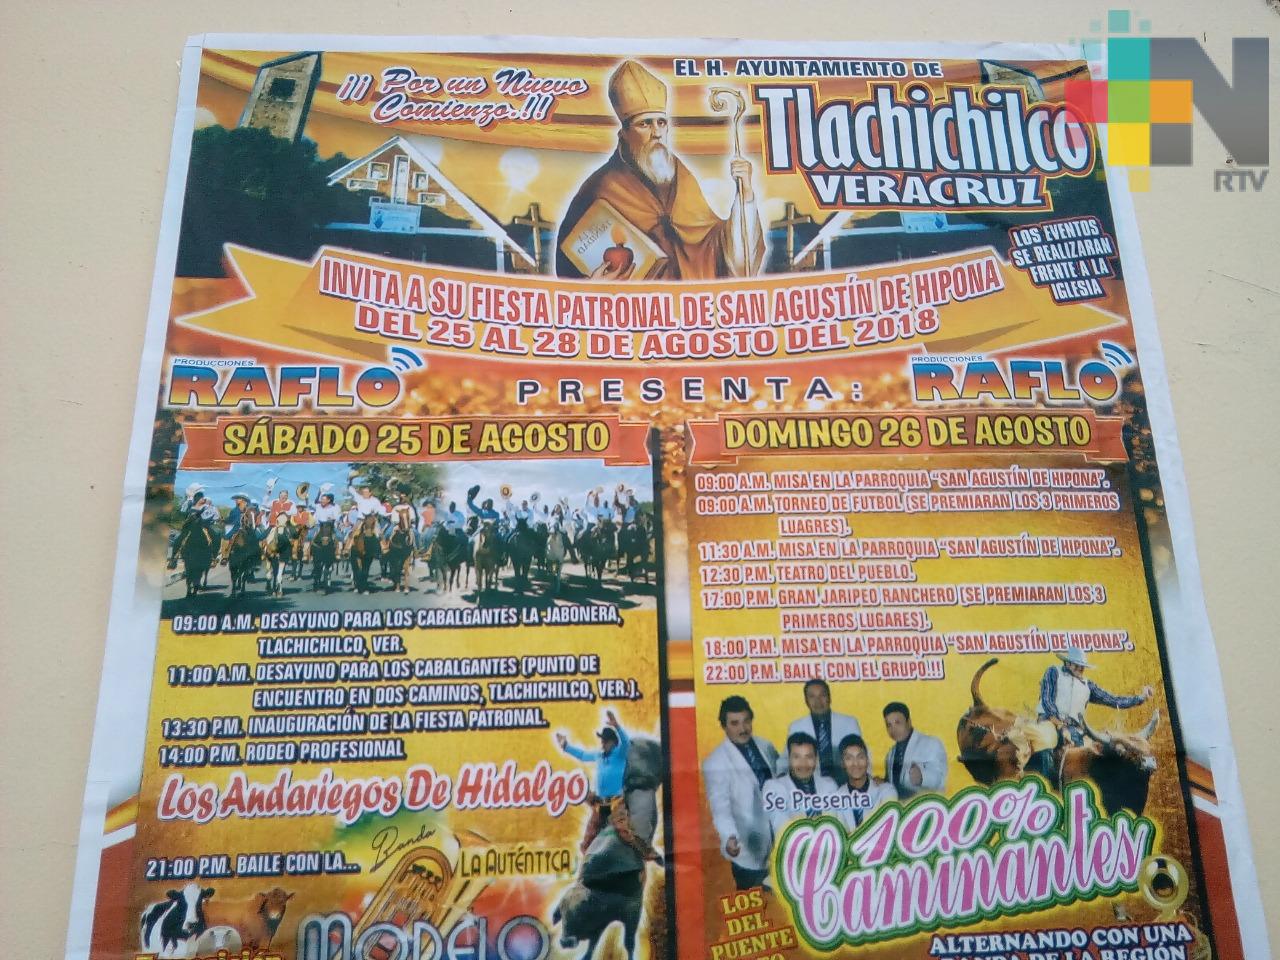 Del 25 al 28 de agosto festejarán a San Agustín de Hipona en Tlachichilco